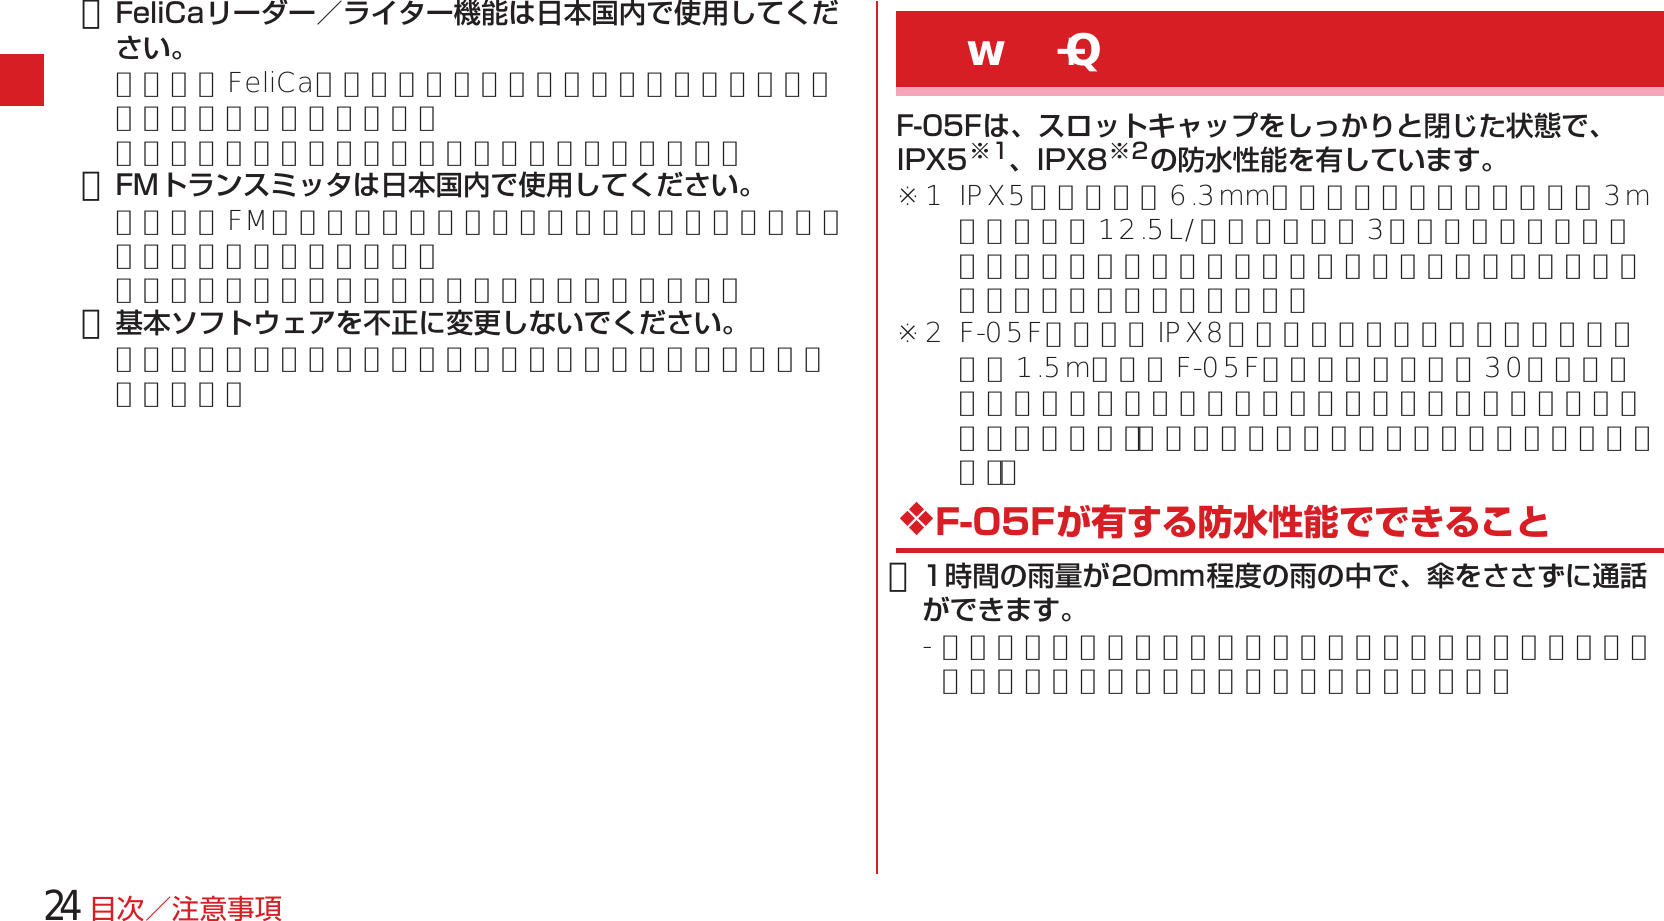 Page 26 of Fujitsu F05F Mobile Phone User Manual 13  UsersManual